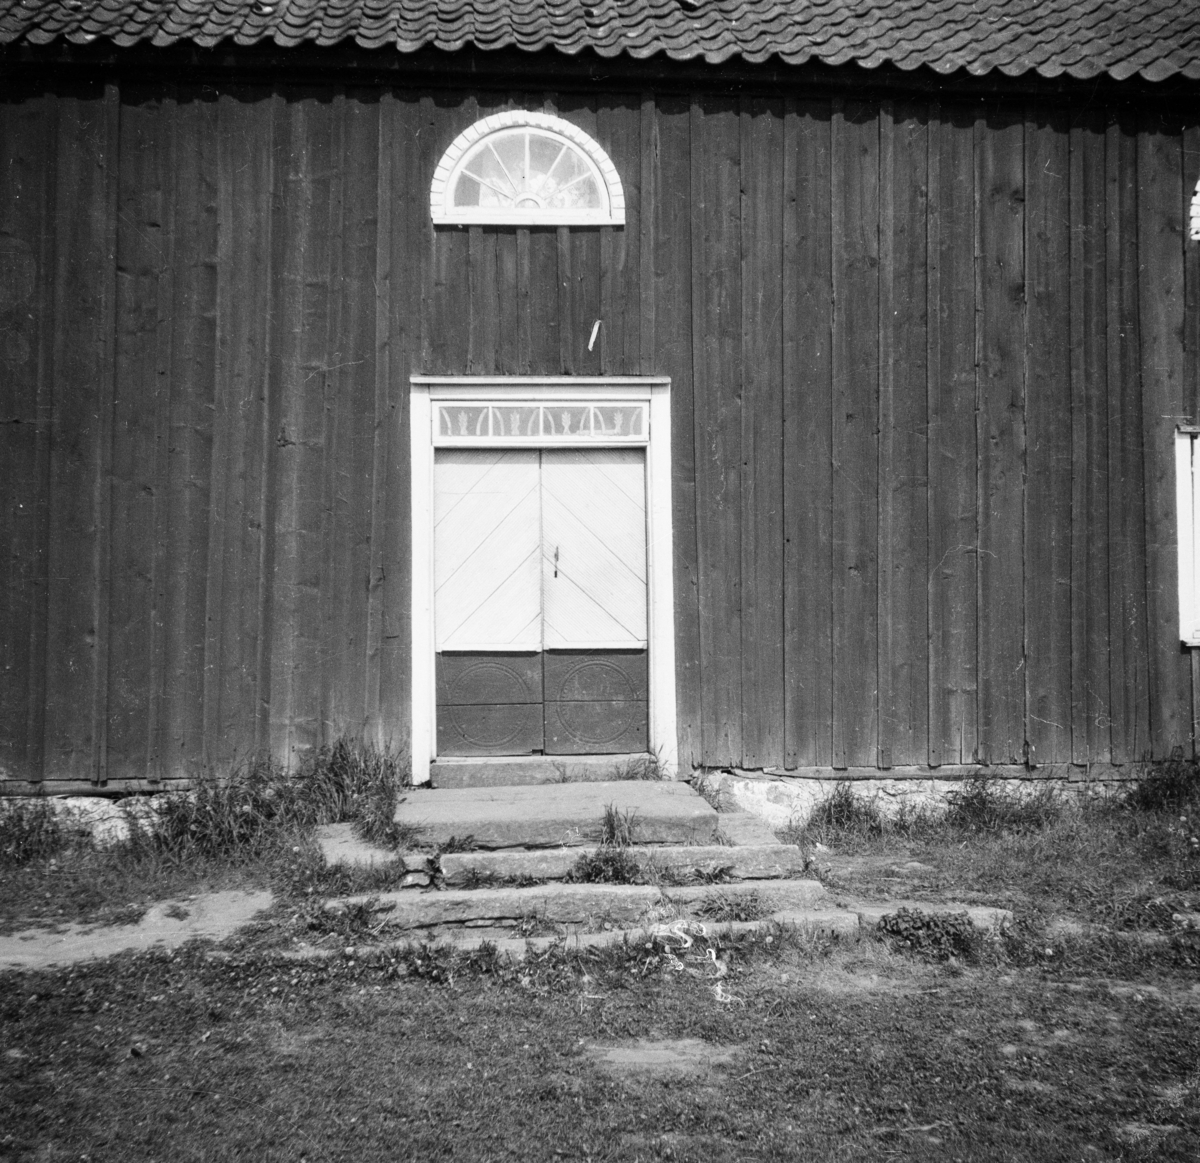 Carlsgården i Gullereds by, Västergötland
Exteriör

Svensk arkitektur: kyrkor, herrgårdar med mera fotograferade av Arkitekturminnesföreningen 1908-23.